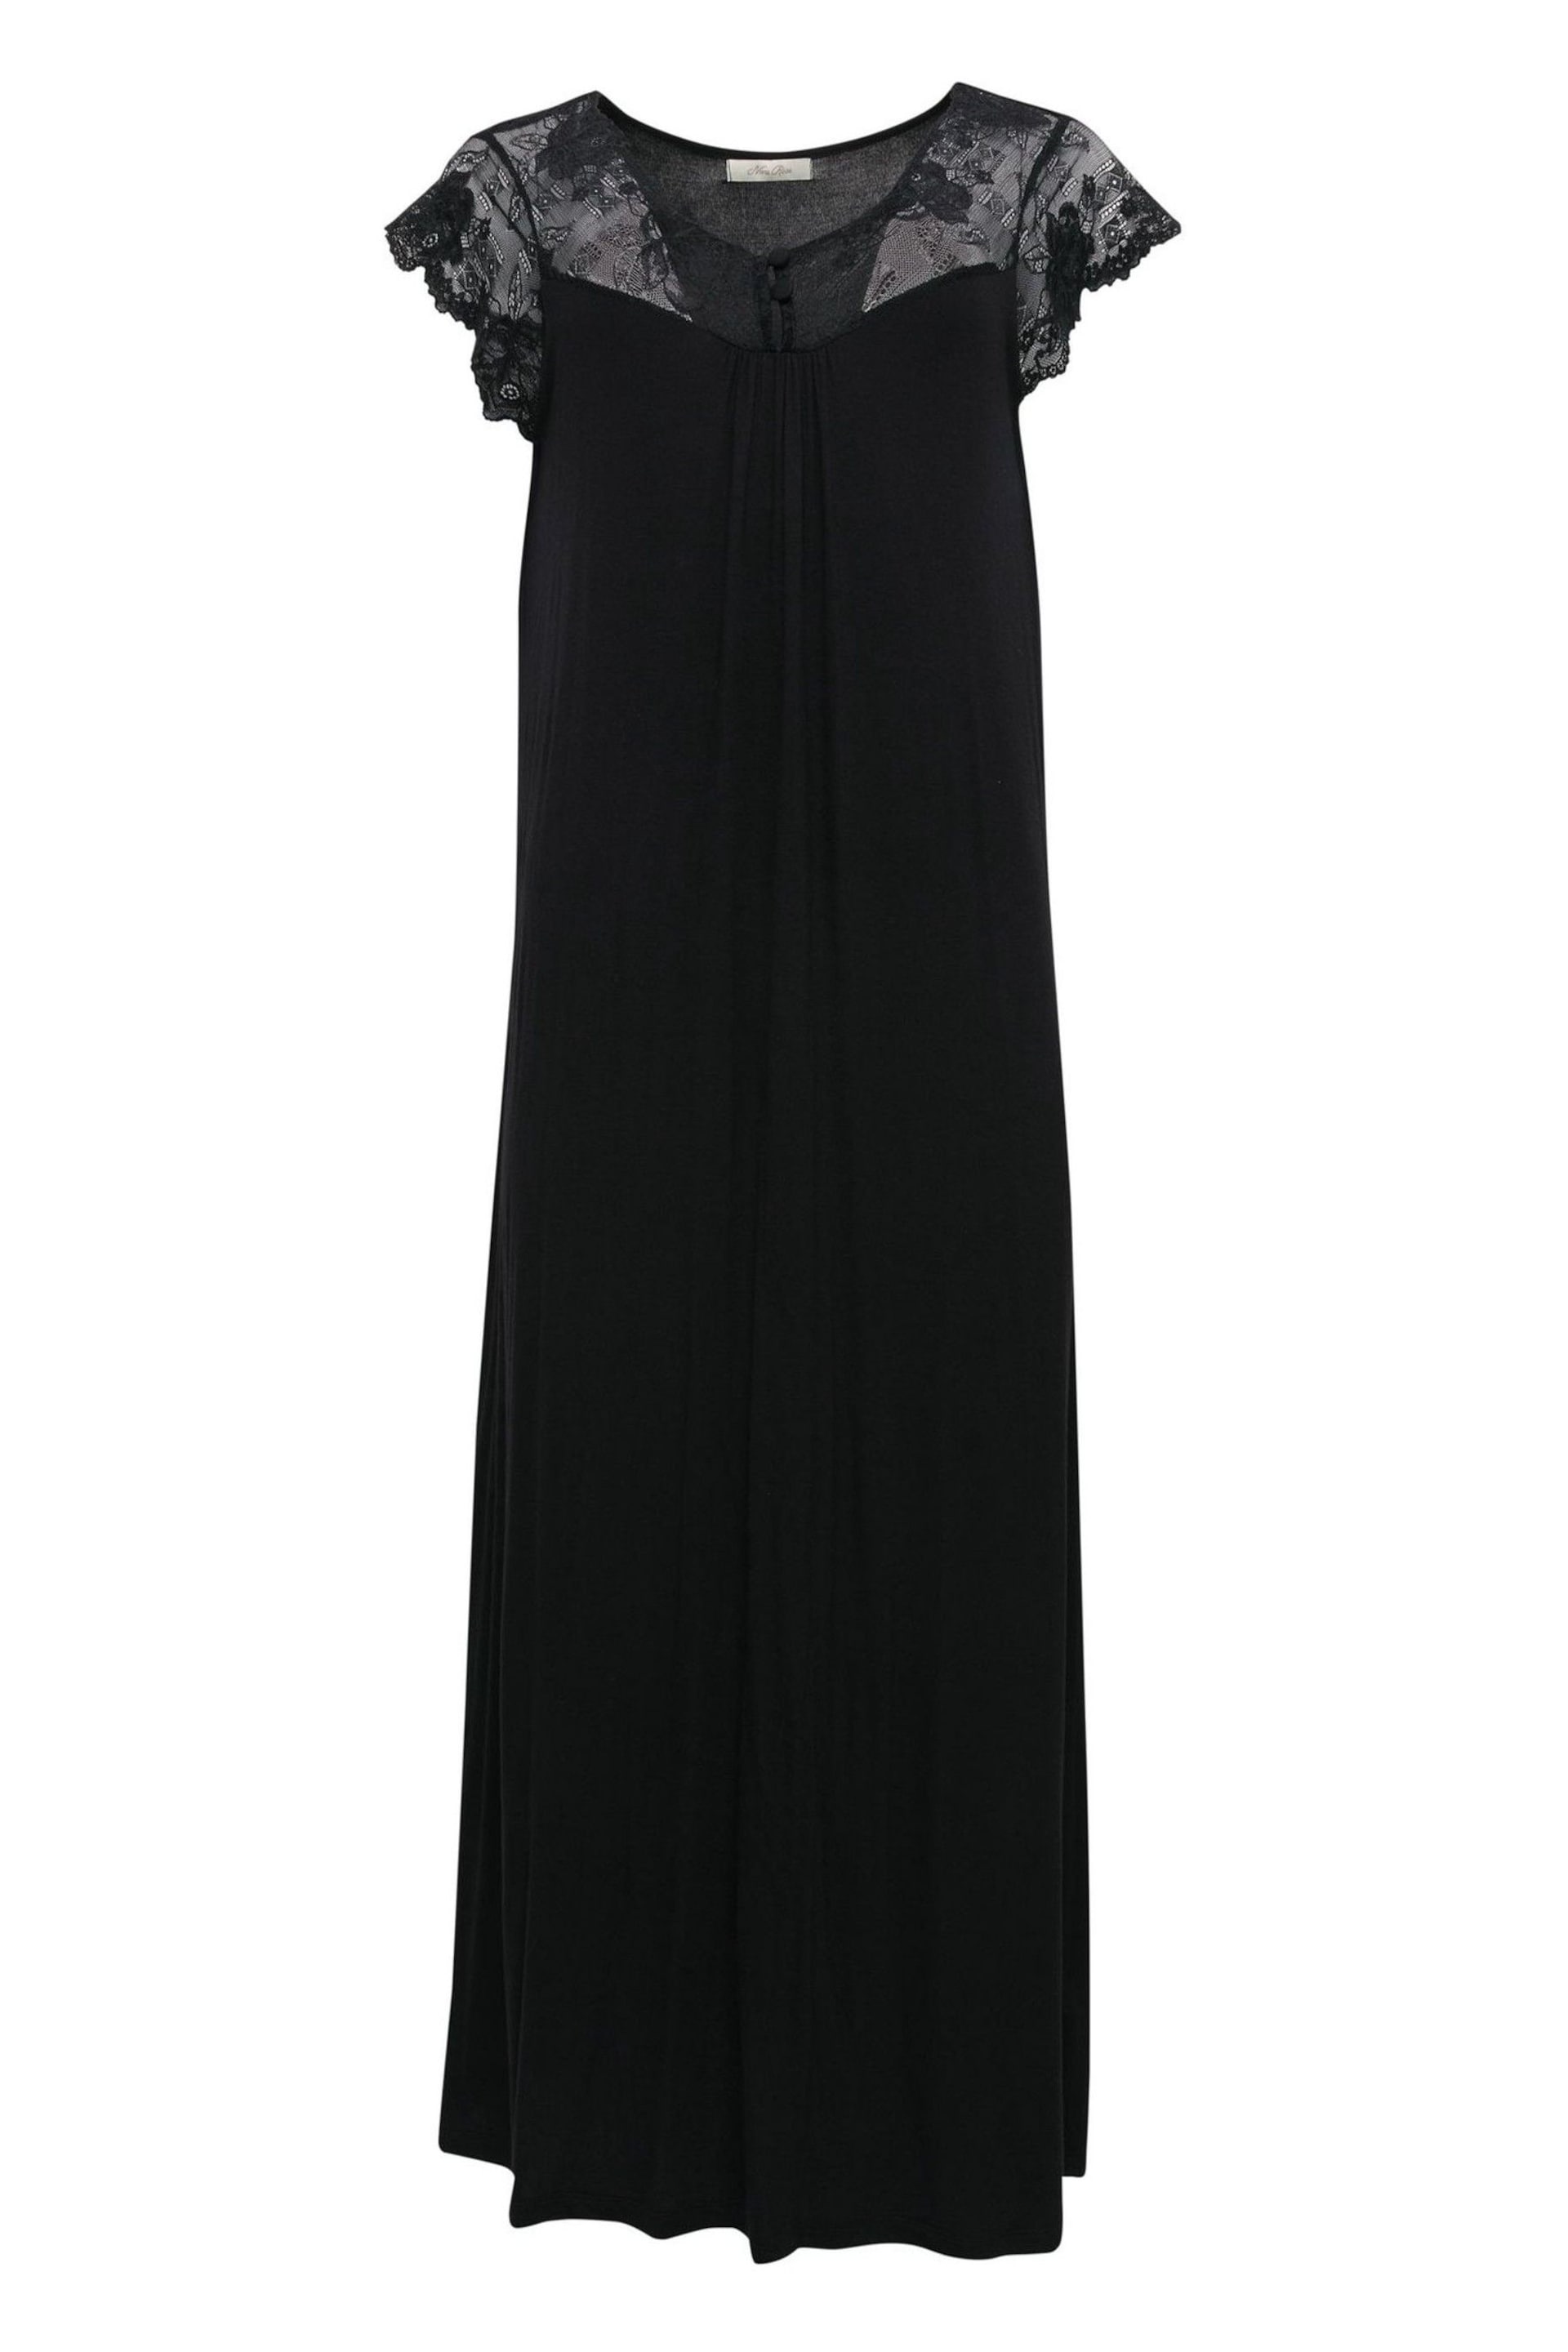 Nora Rose Black Jersey Long Nightdress - Image 4 of 4